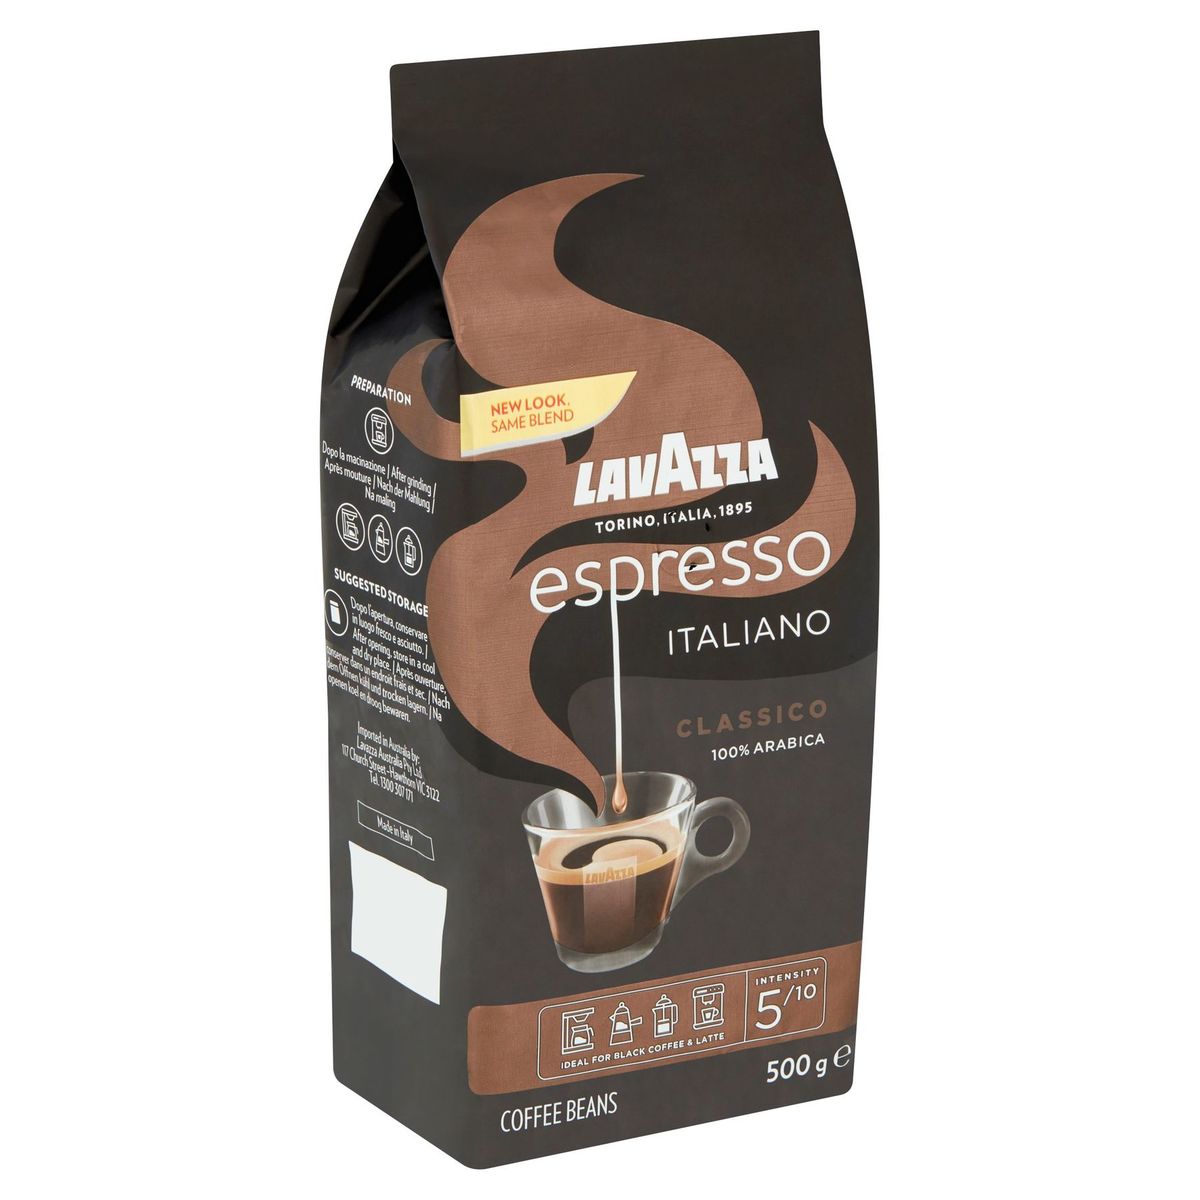 Lavazza Espresso Italiano Classico Coffee Beans 500 g